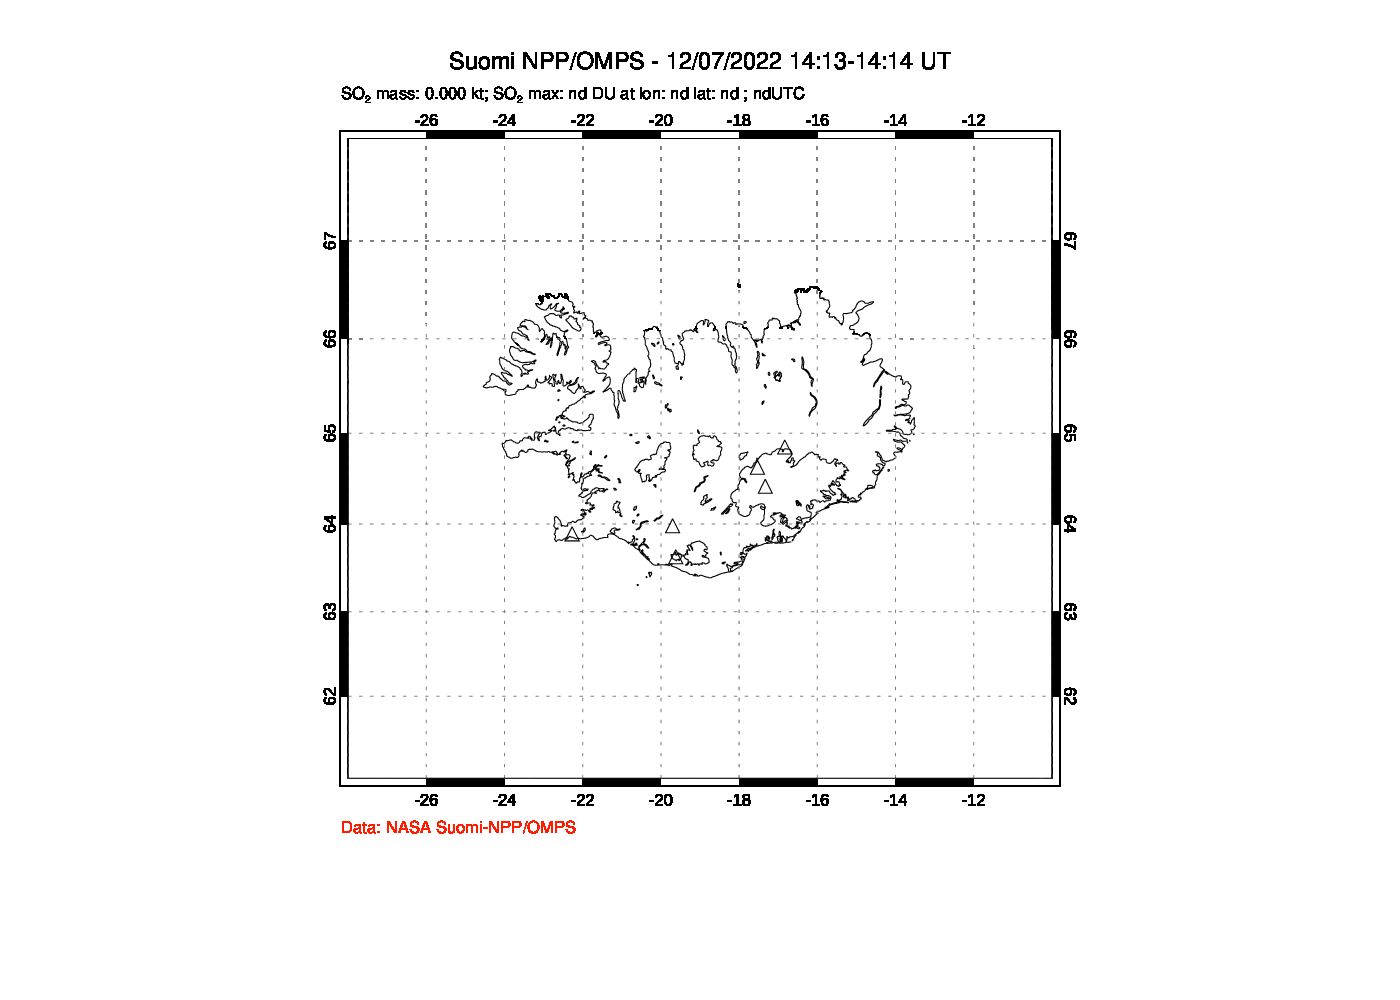 A sulfur dioxide image over Iceland on Dec 07, 2022.